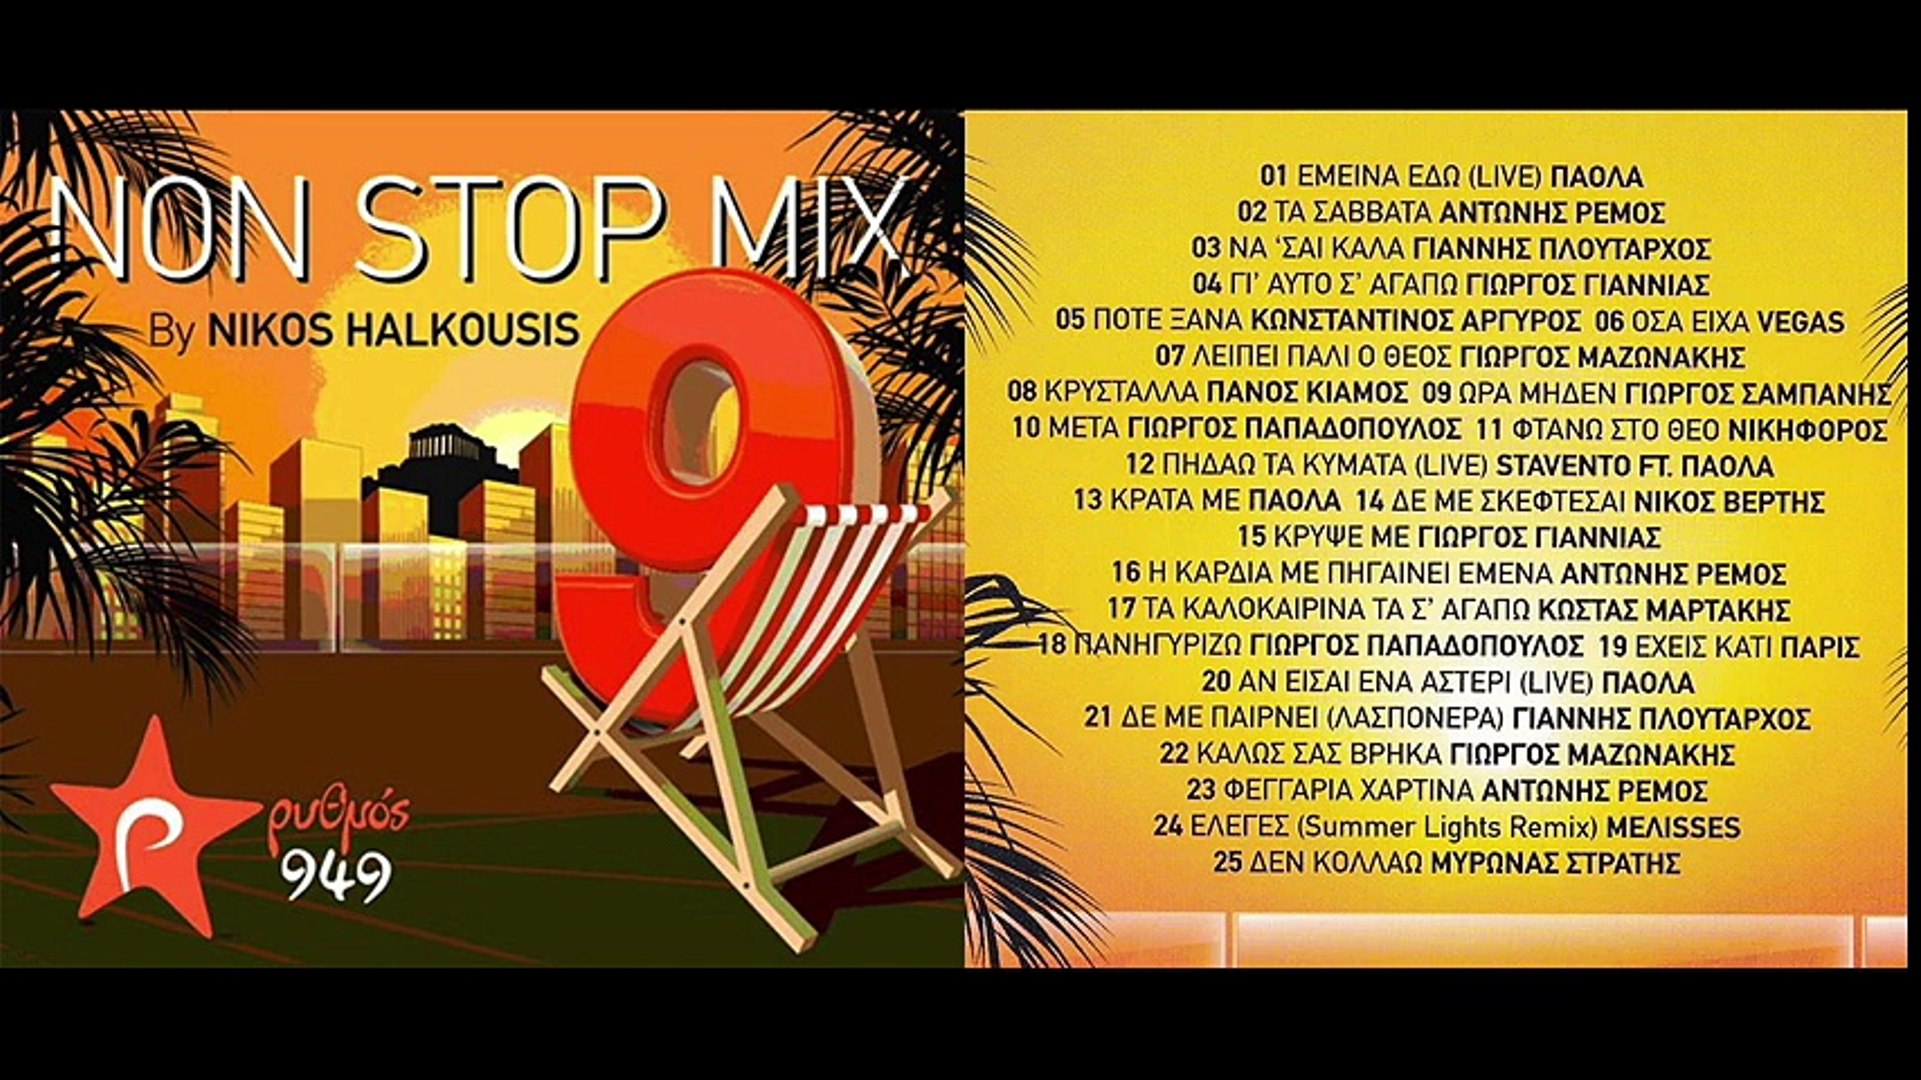 Rythmos 9,49 Non Stop Mix 9 by Nikos Halkousis (Official Full Album HQ) -  video Dailymotion